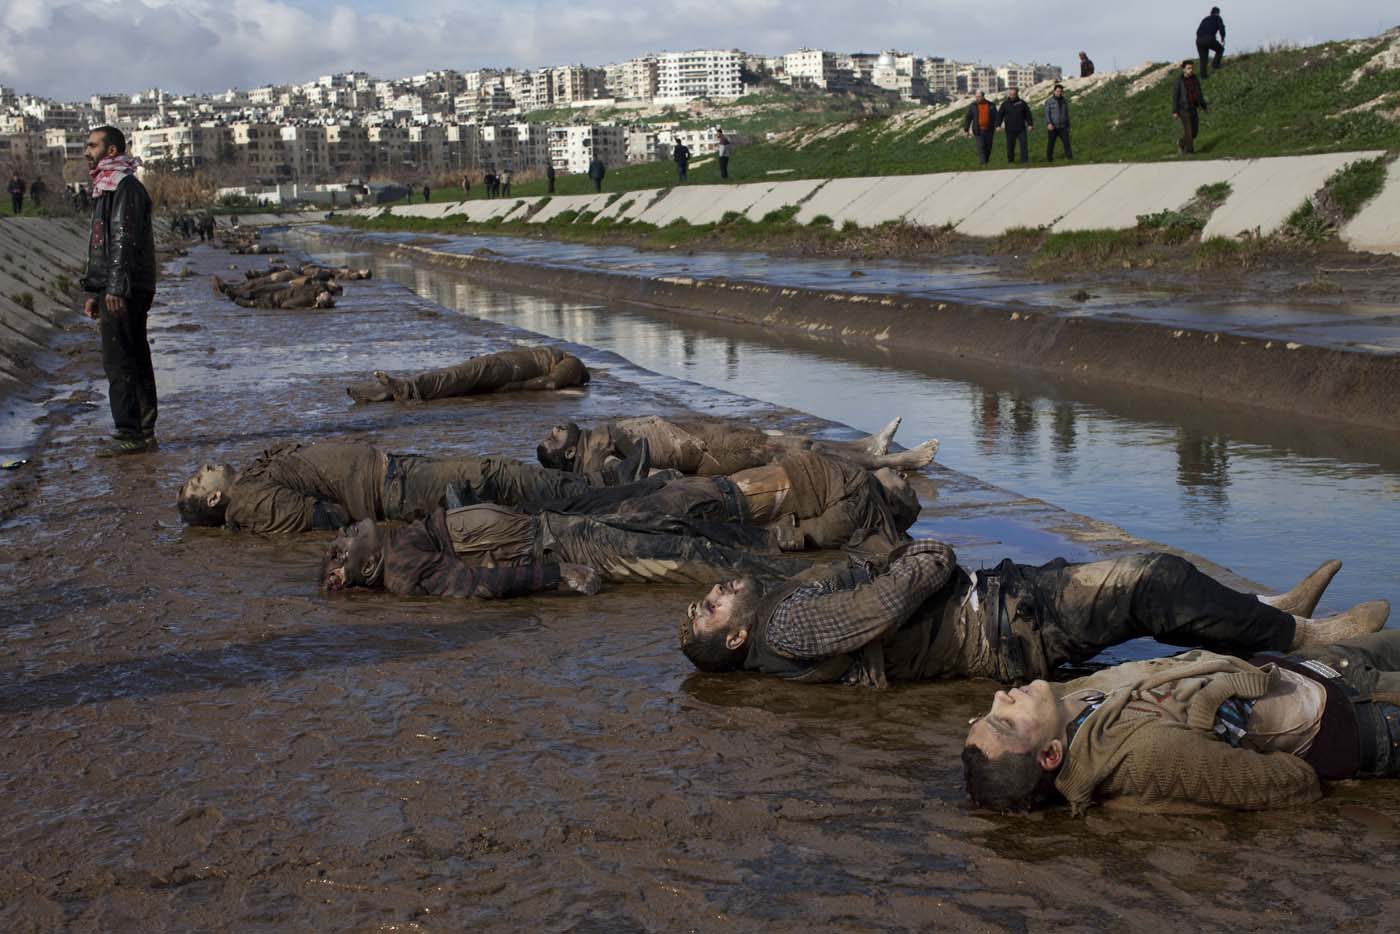 Hallan en río de Siria unos 80 jóvenes ejecutados (Imágenes Fuertes)